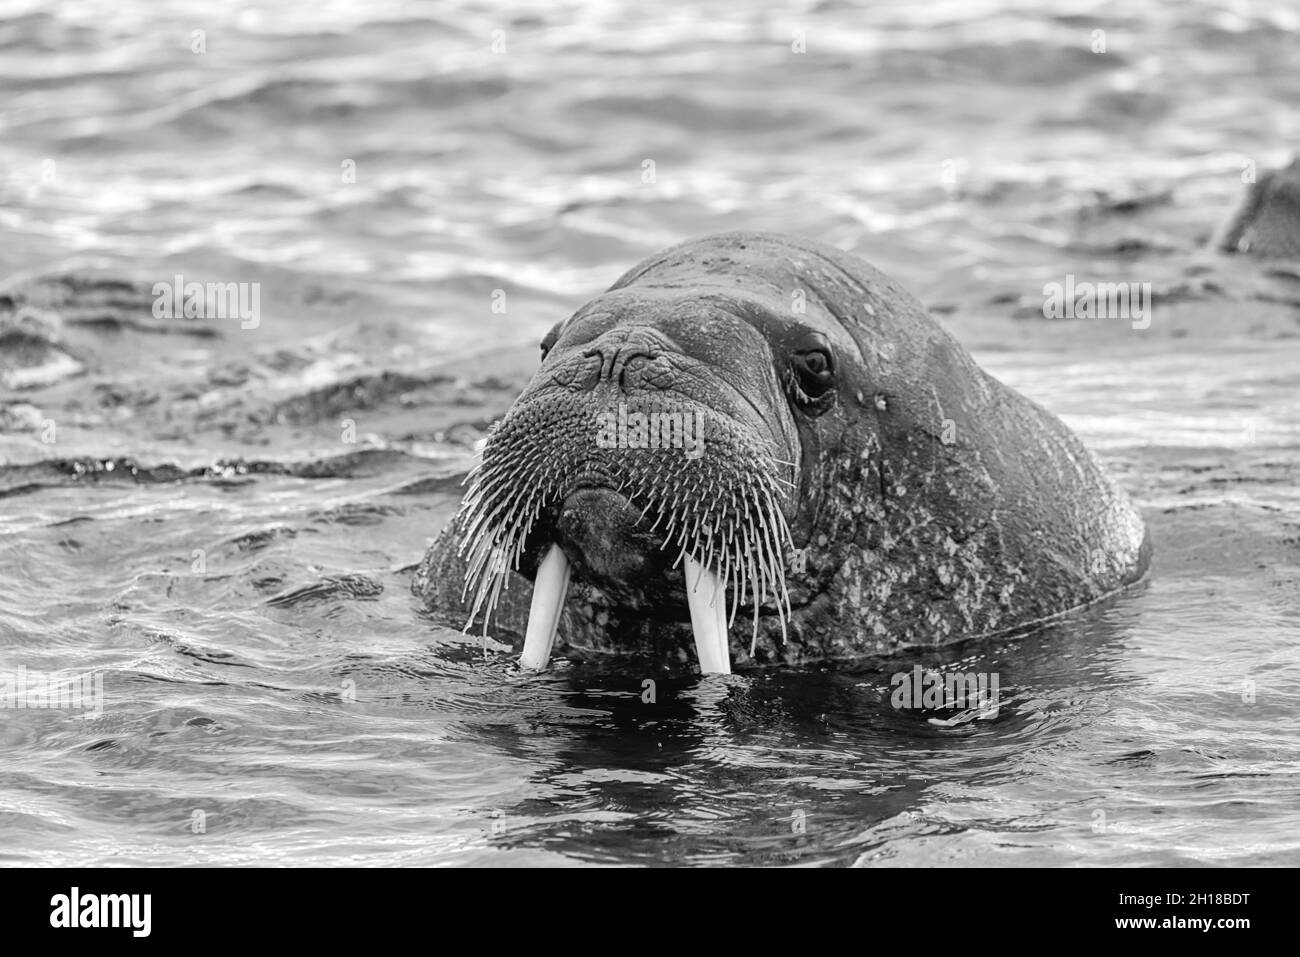 Walrus (Odobenus rosmarus),  in sea at Torellnesfjellet, Nordaustlandet, Svalbard, Norway Stock Photo